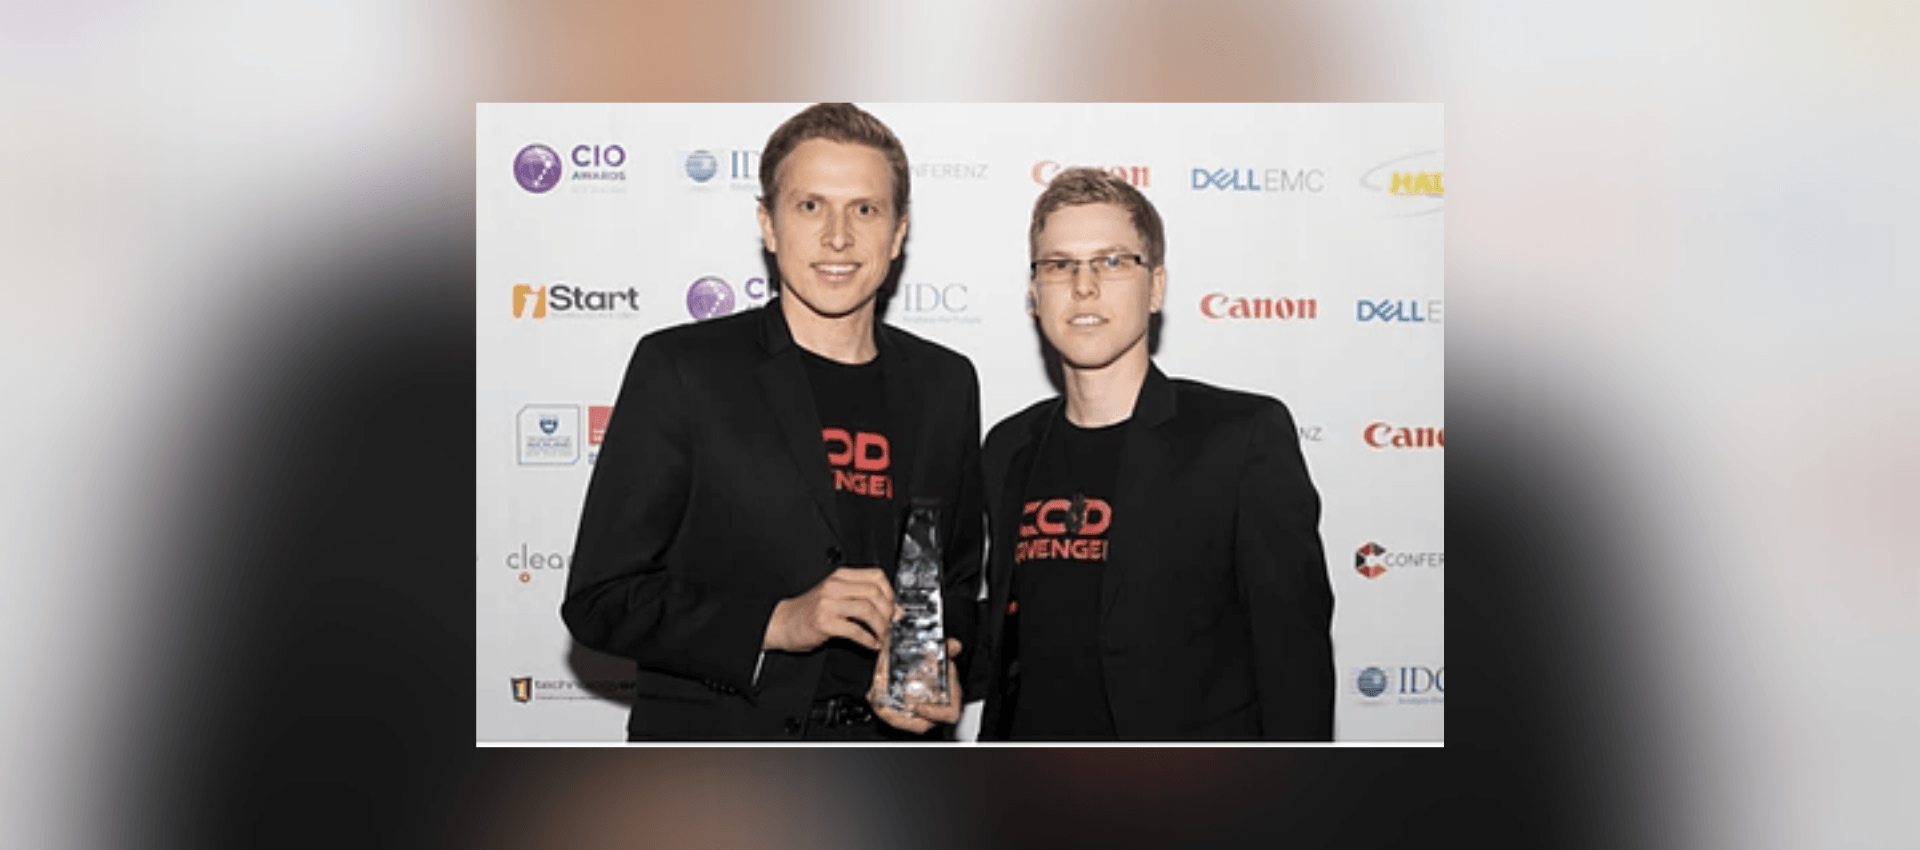 Code Avengers win NZ CIO 2017 Award